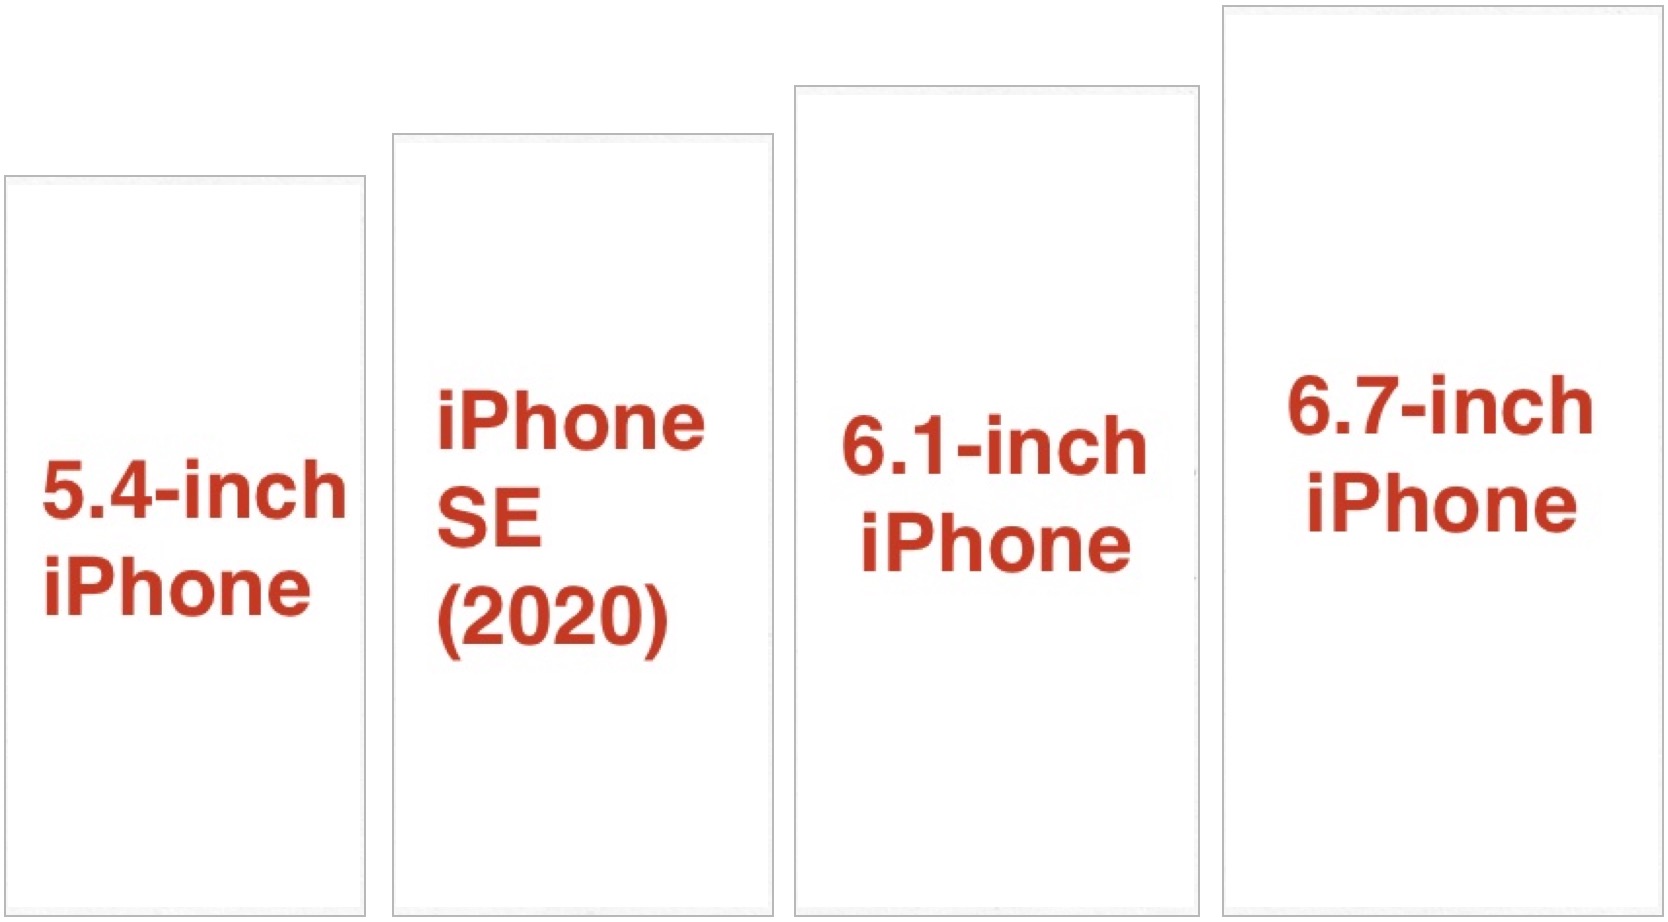 iPhone comparison 2020